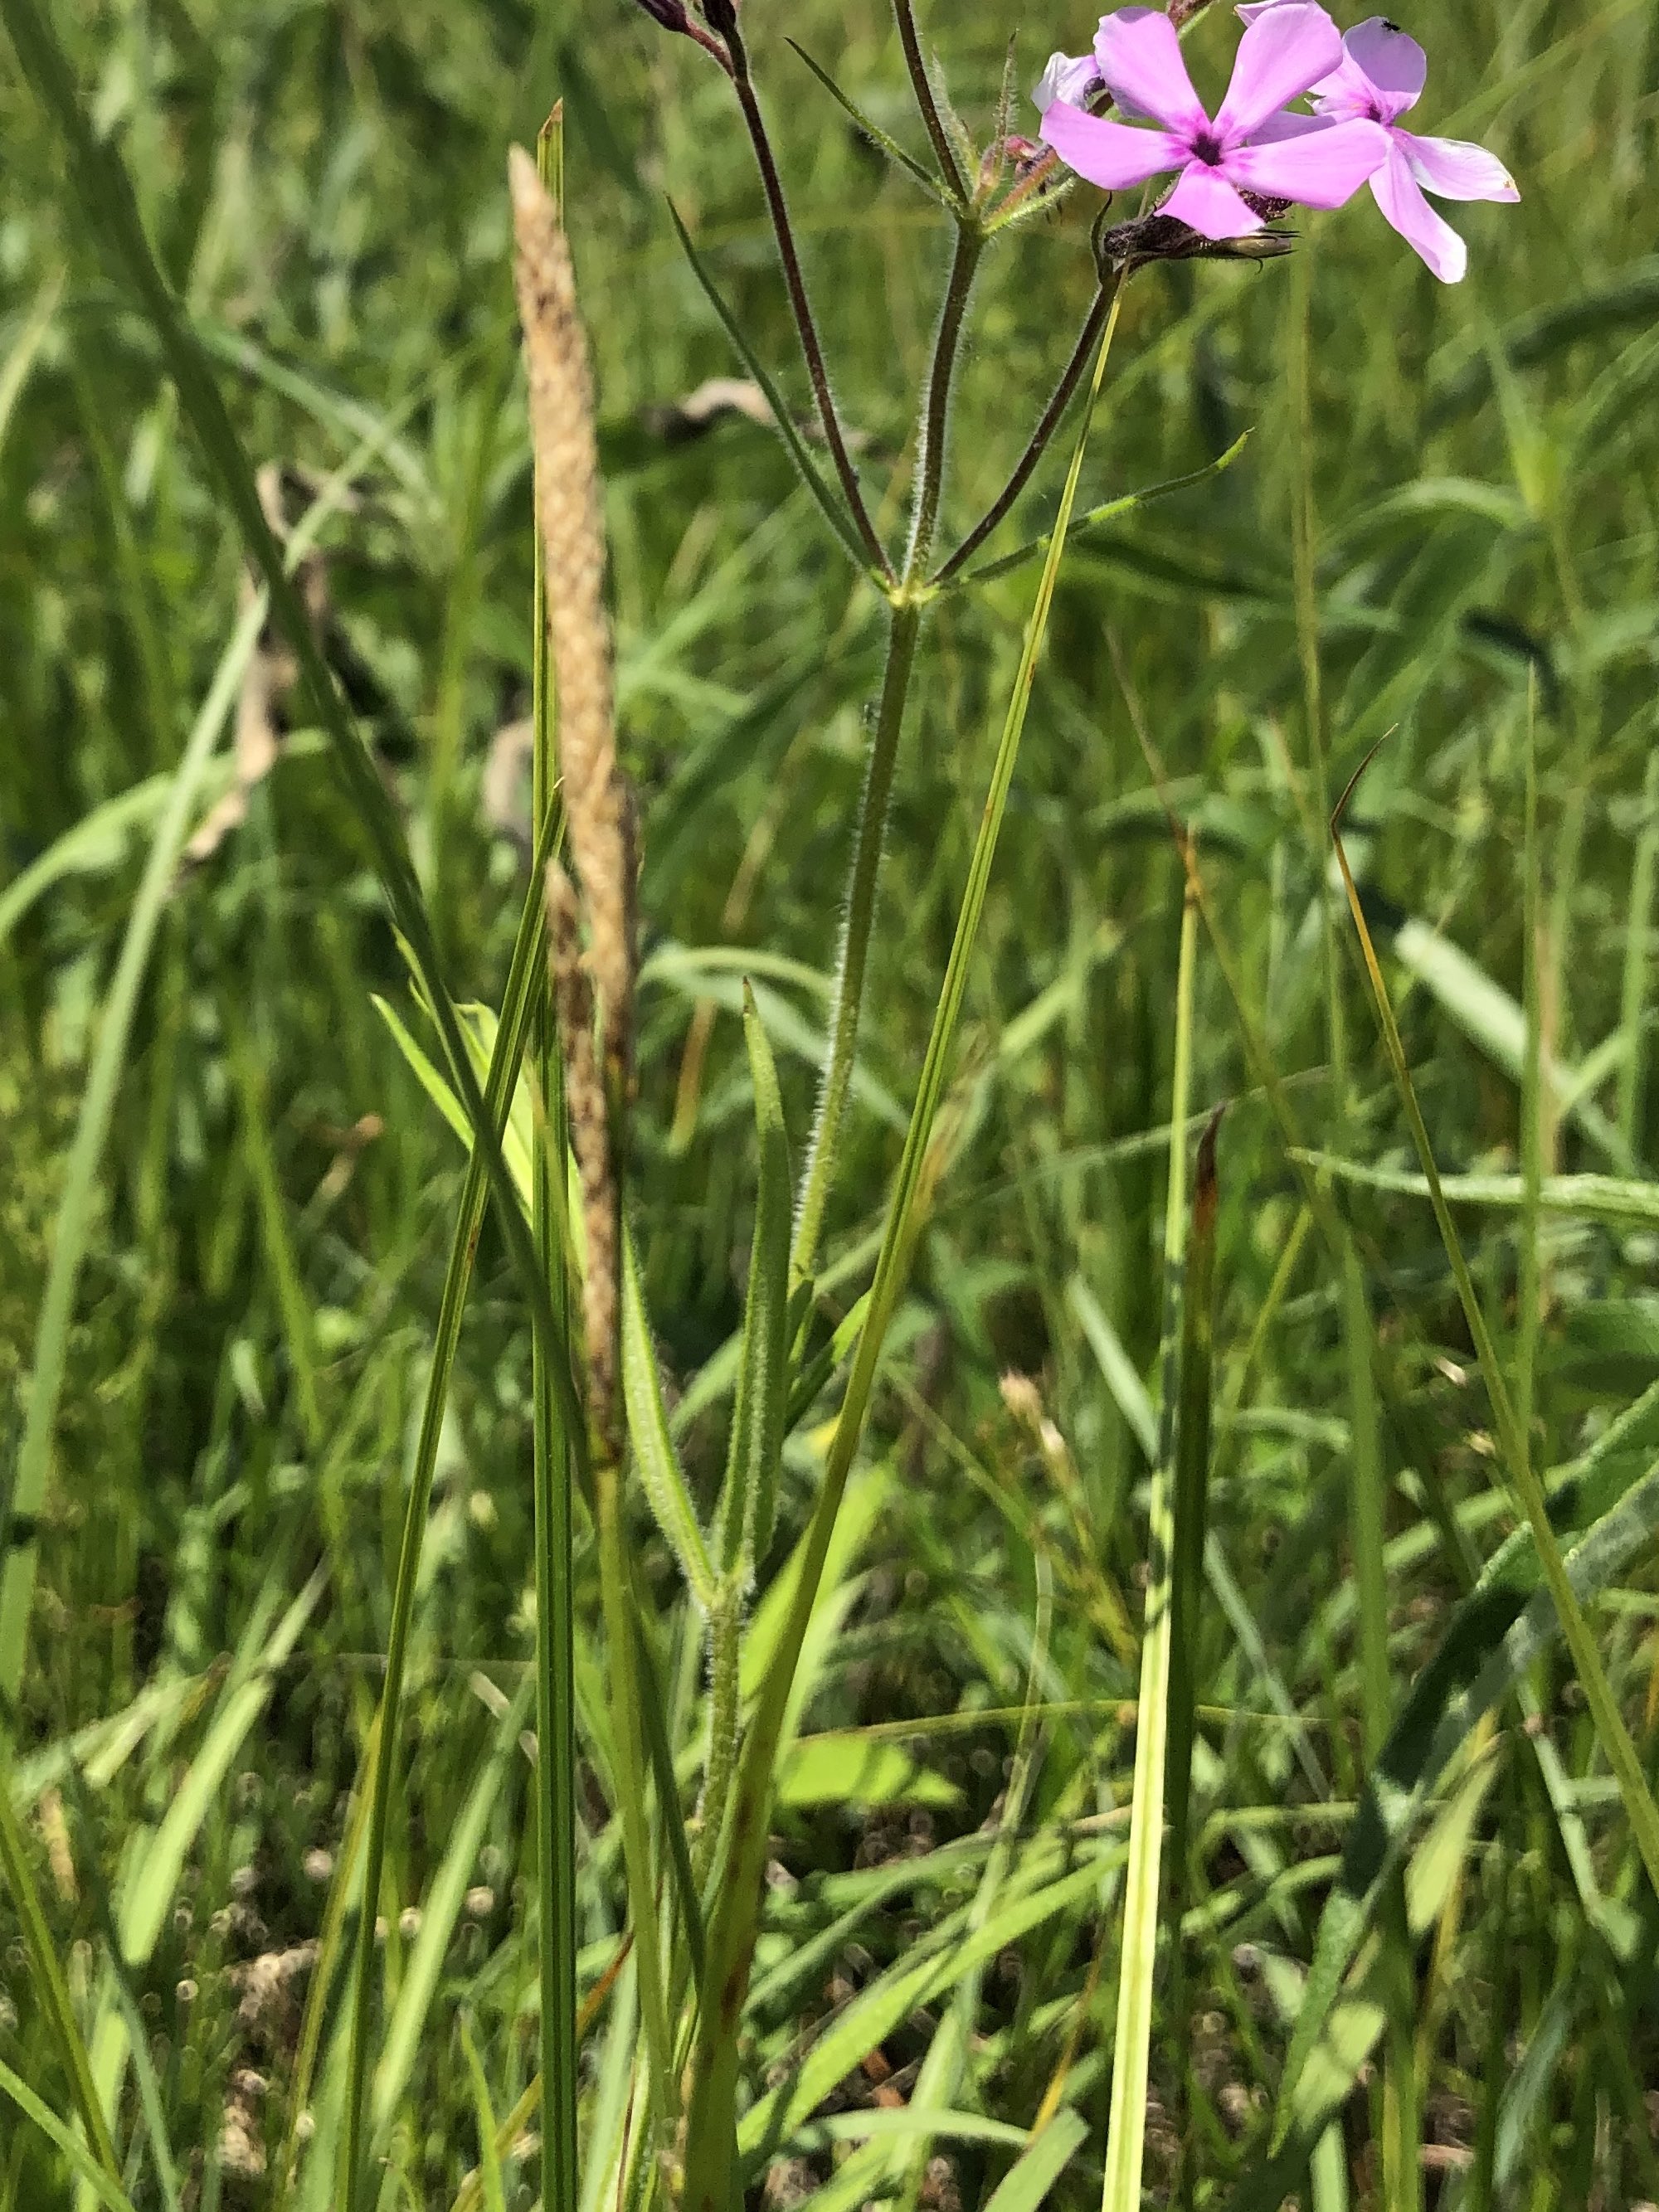 Prairie Phlox stem and leaves in UW Arboretum's Greene Prairie in Madison, Wisconsin on June 1, 2021.